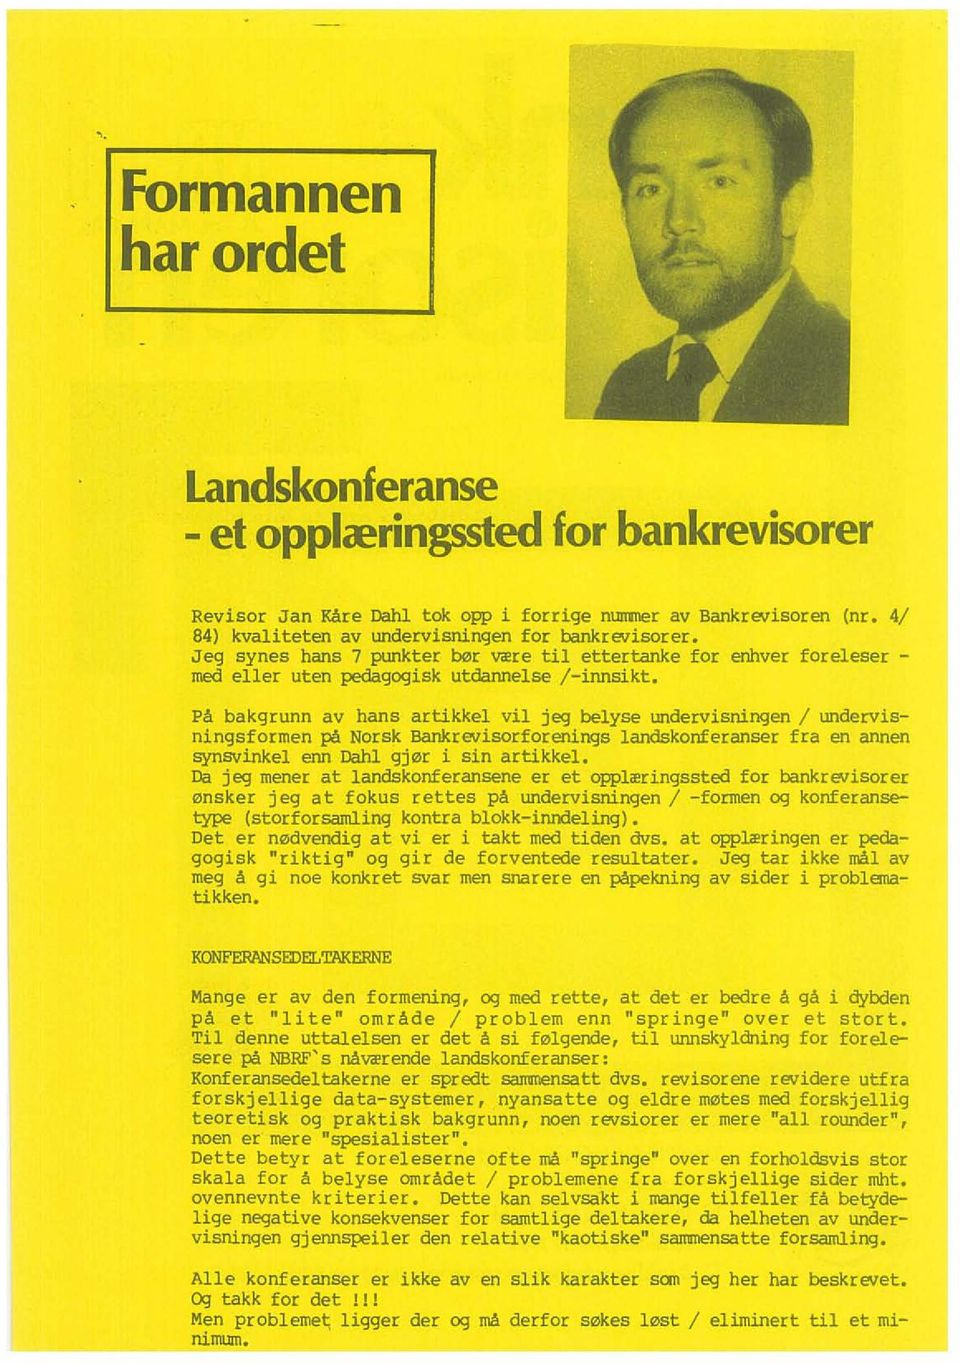 PA bakgrunn av hans artikkel vi! jeg belyse undervisningen / undervisningsformen pa Norsk Bankrevisorforenings landskonferanser fra en annen synsvinkel eon Dahl gj0[ i sin artikkel.